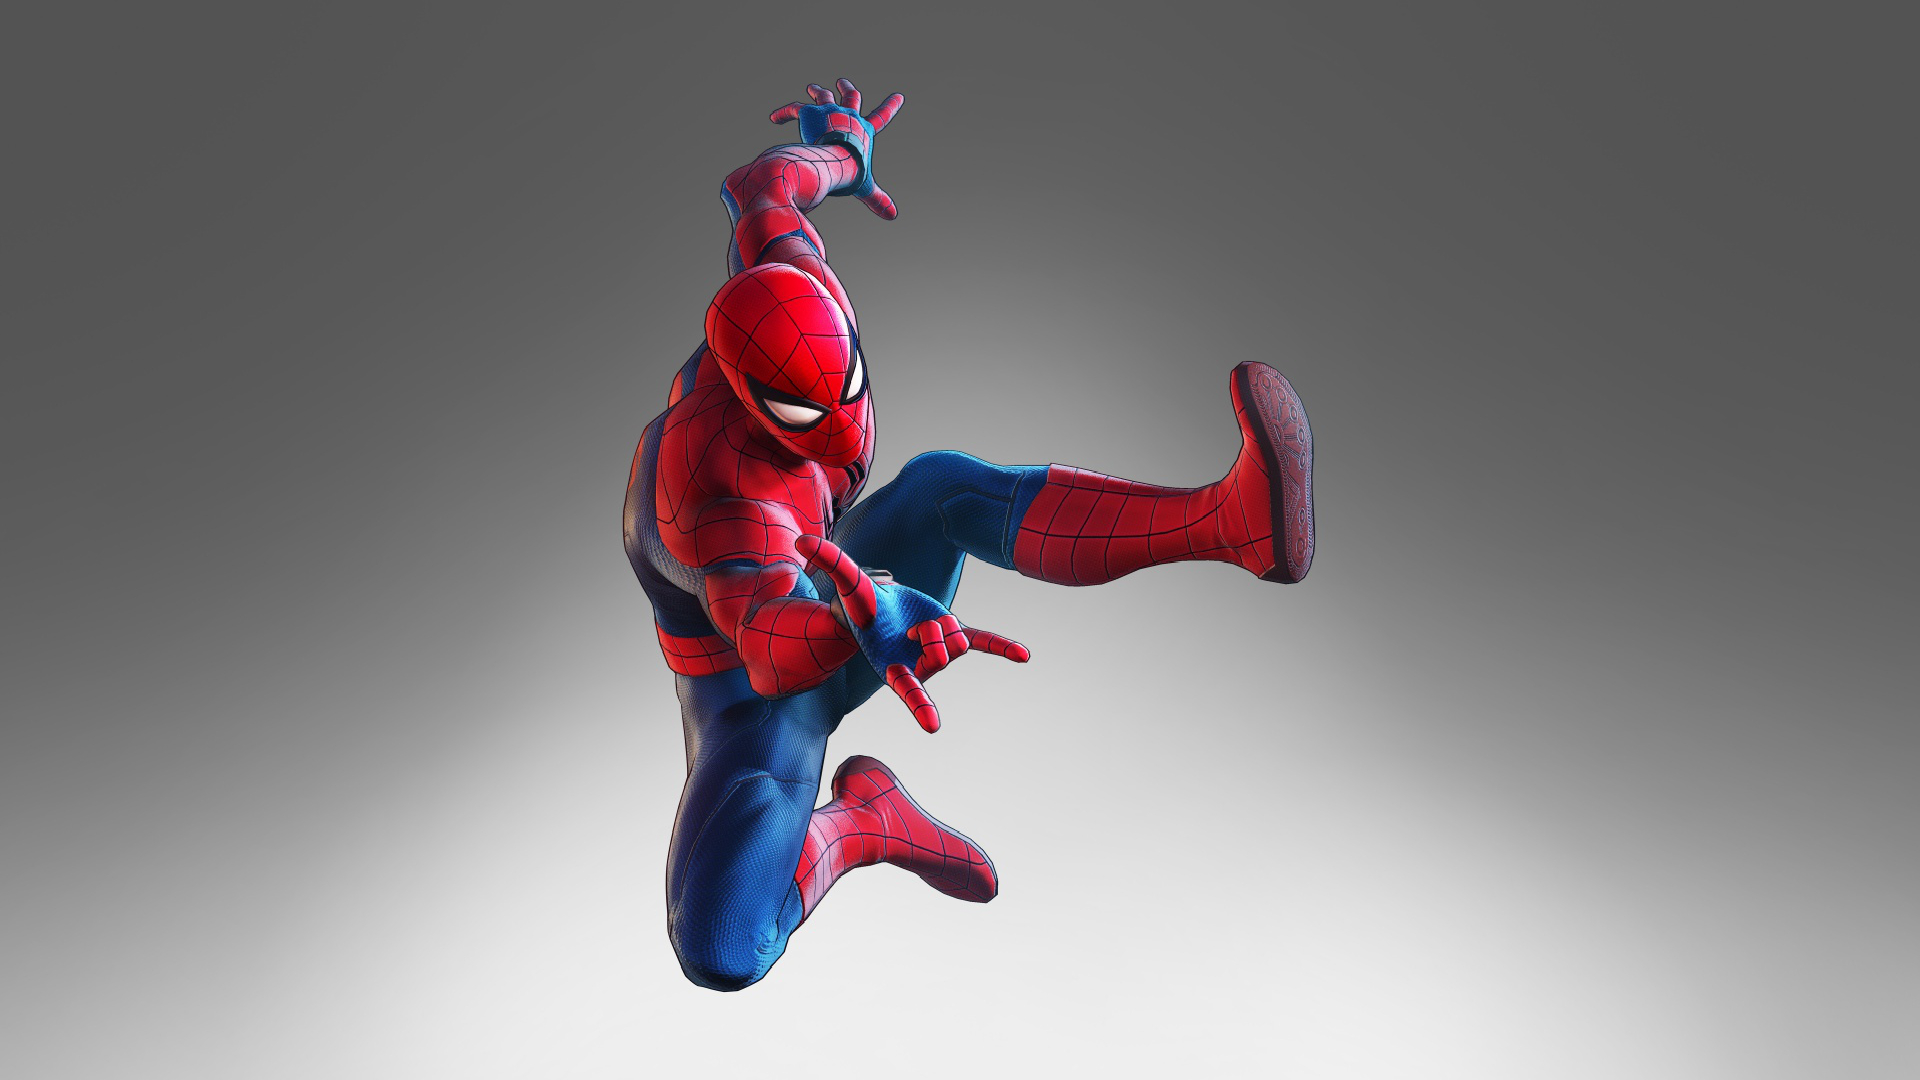 kostenlose tapete,spider man,superheld,erfundener charakter,action figur,figur